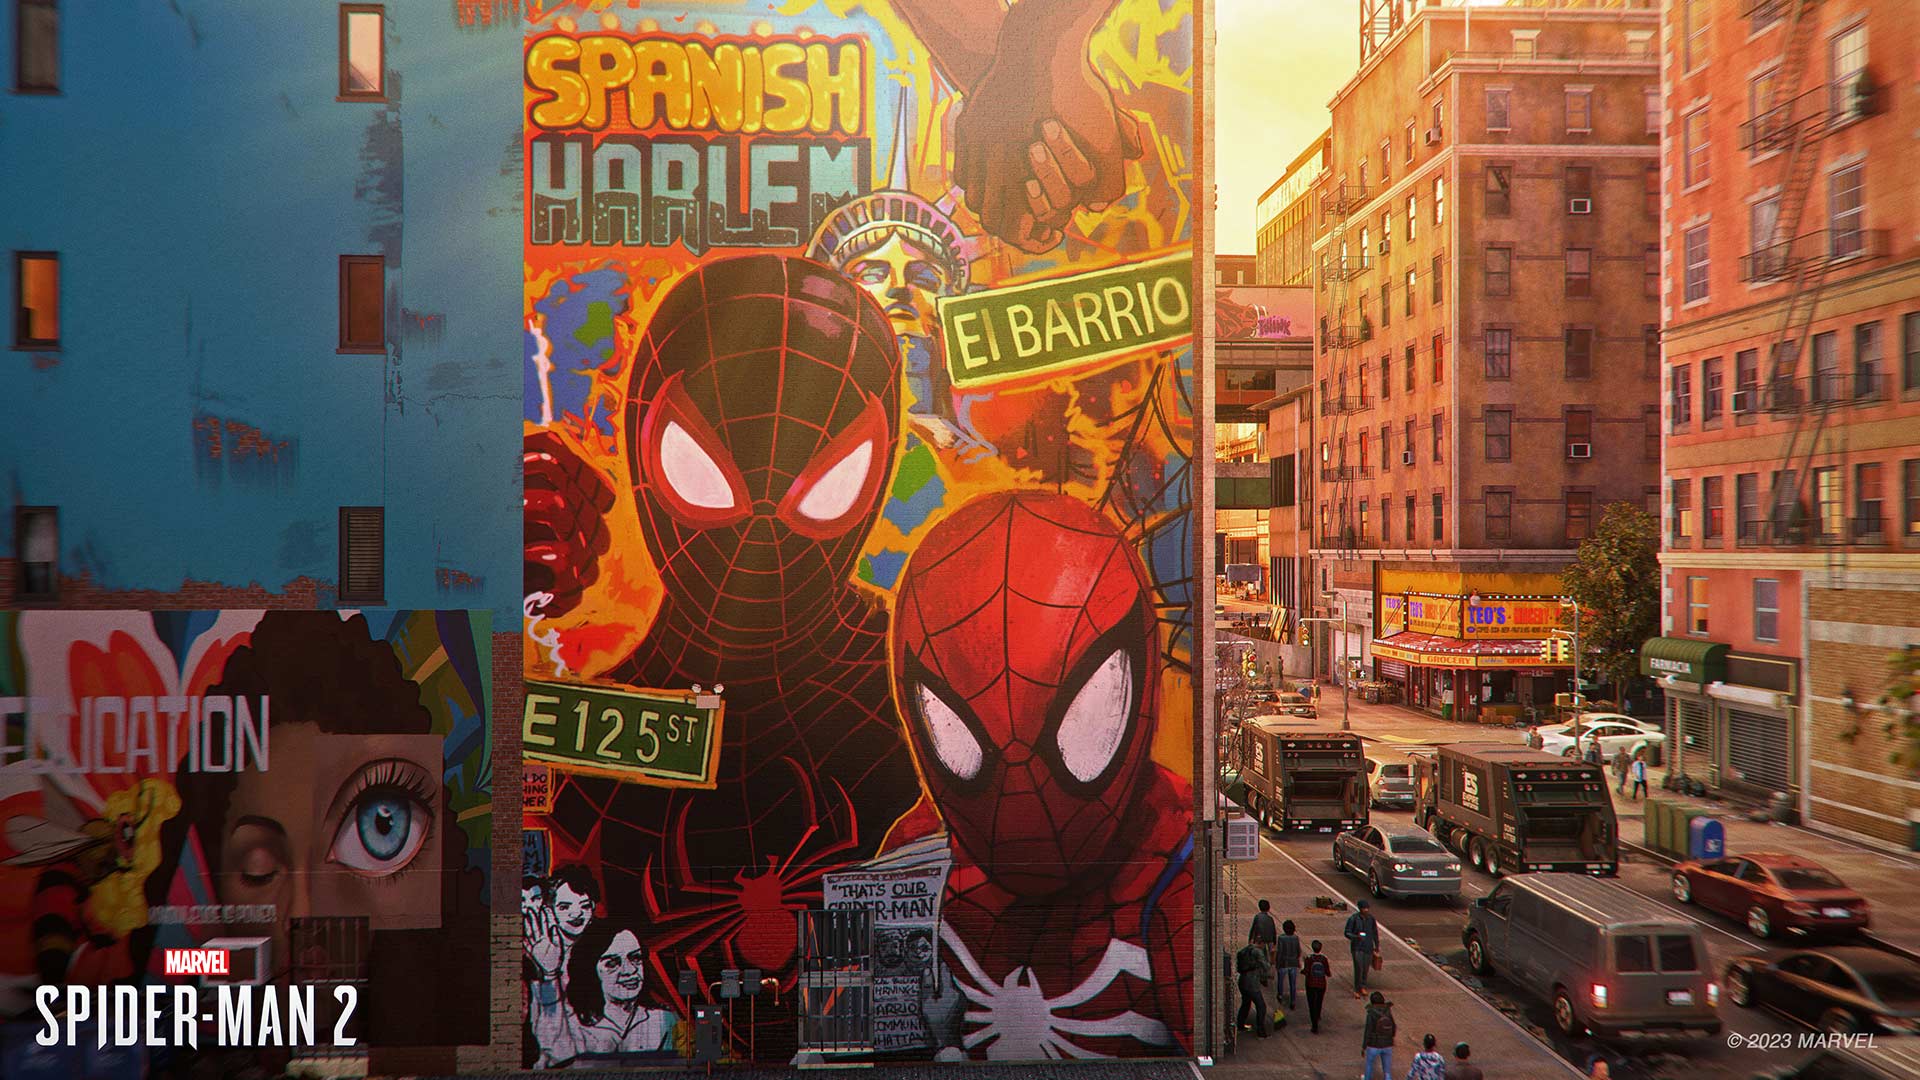 Marvel's Spider-Man mural